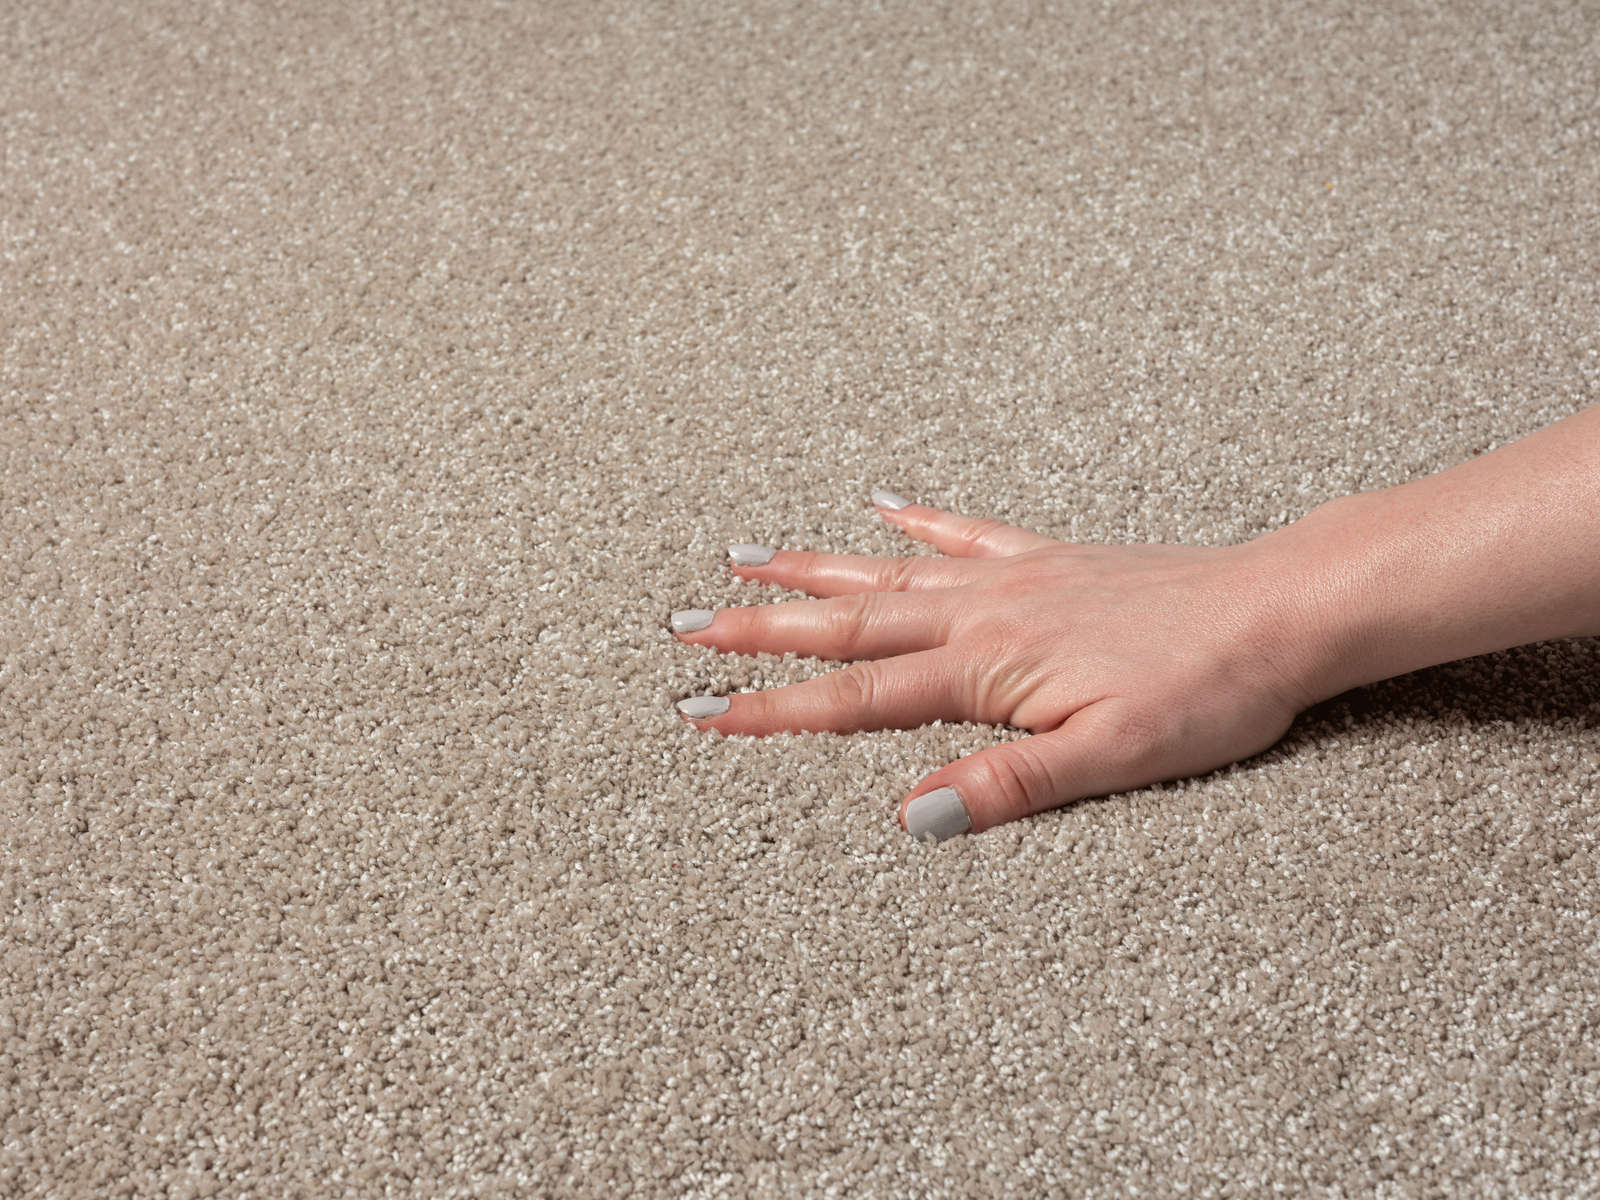             Zacht kortpolig tapijt in beige - 200 x 140 cm
        